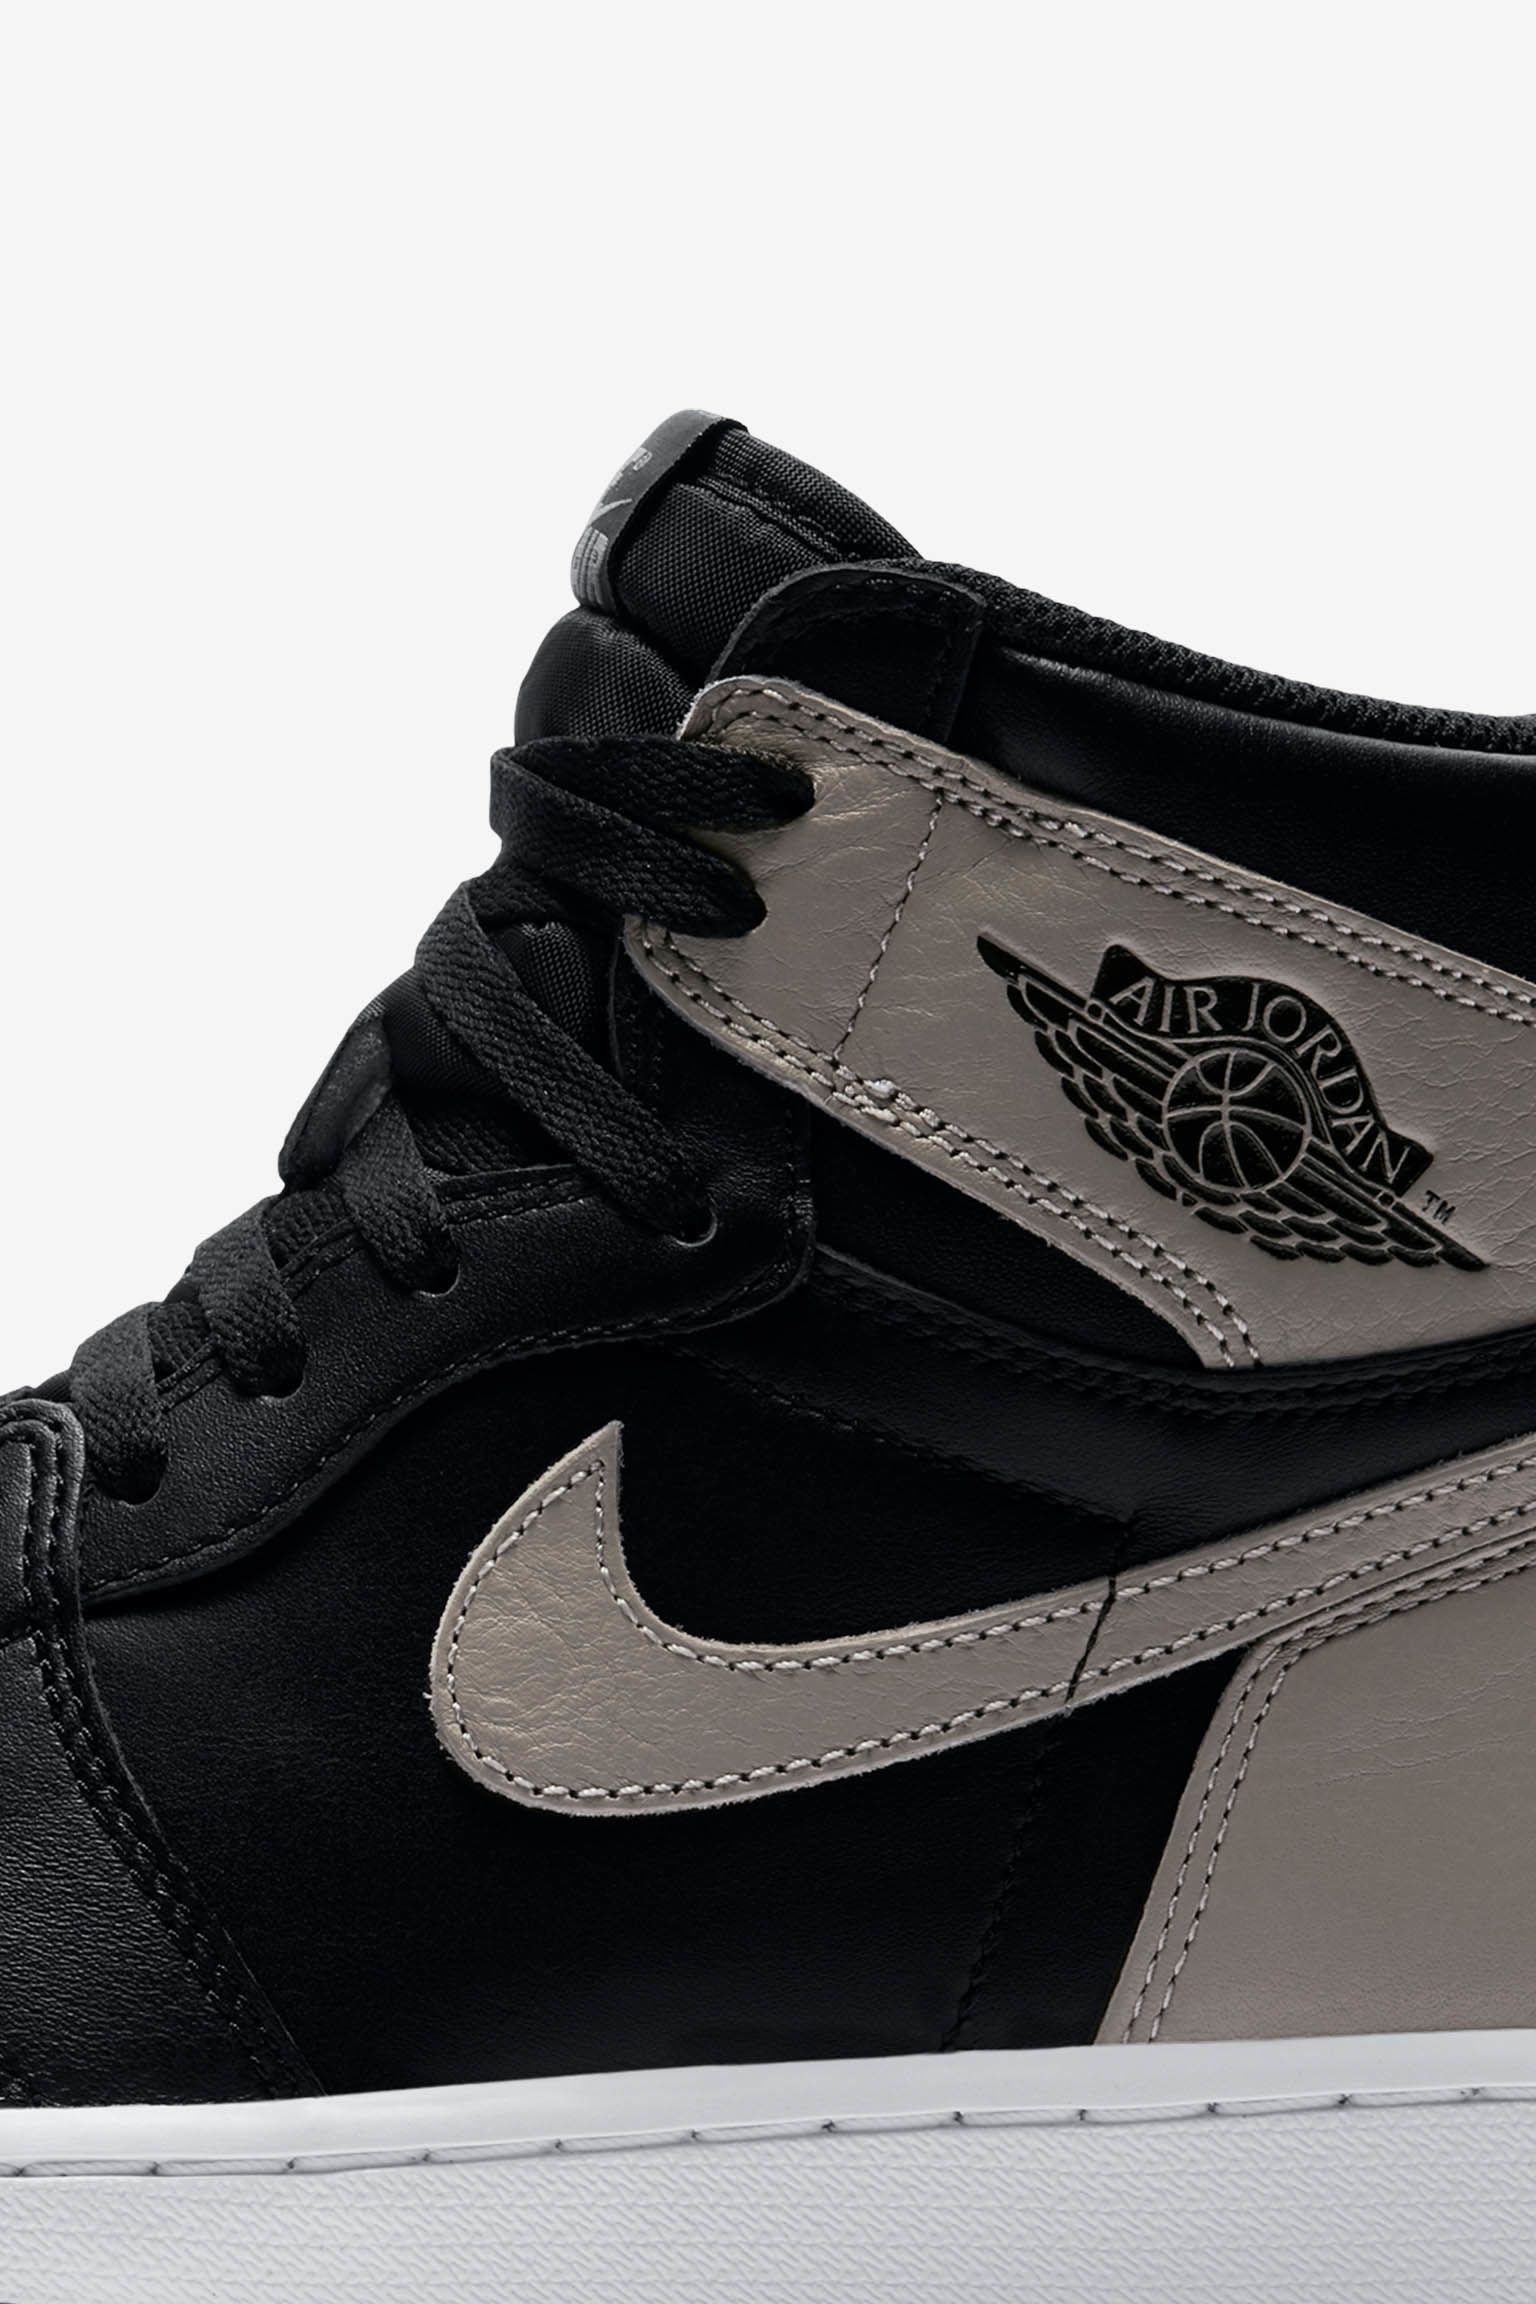 Air Jordan 1 'Shadow' Release Date. Nike⁠+ SNKRS